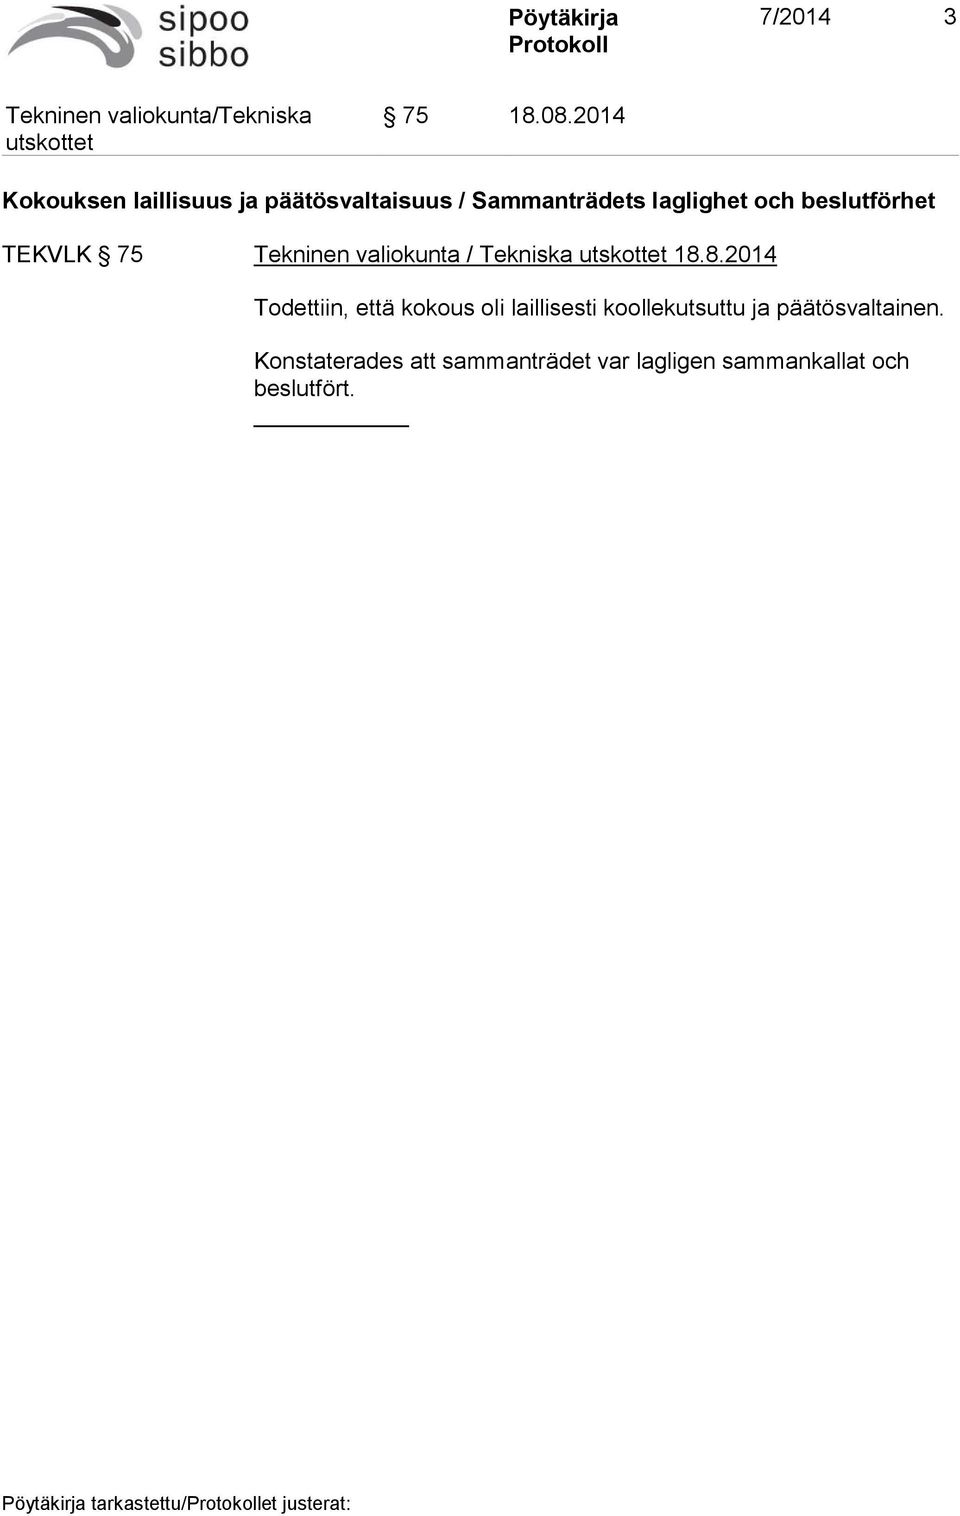 beslutförhet TEKVLK 75 Tekninen valiokunta / Tekniska 18.